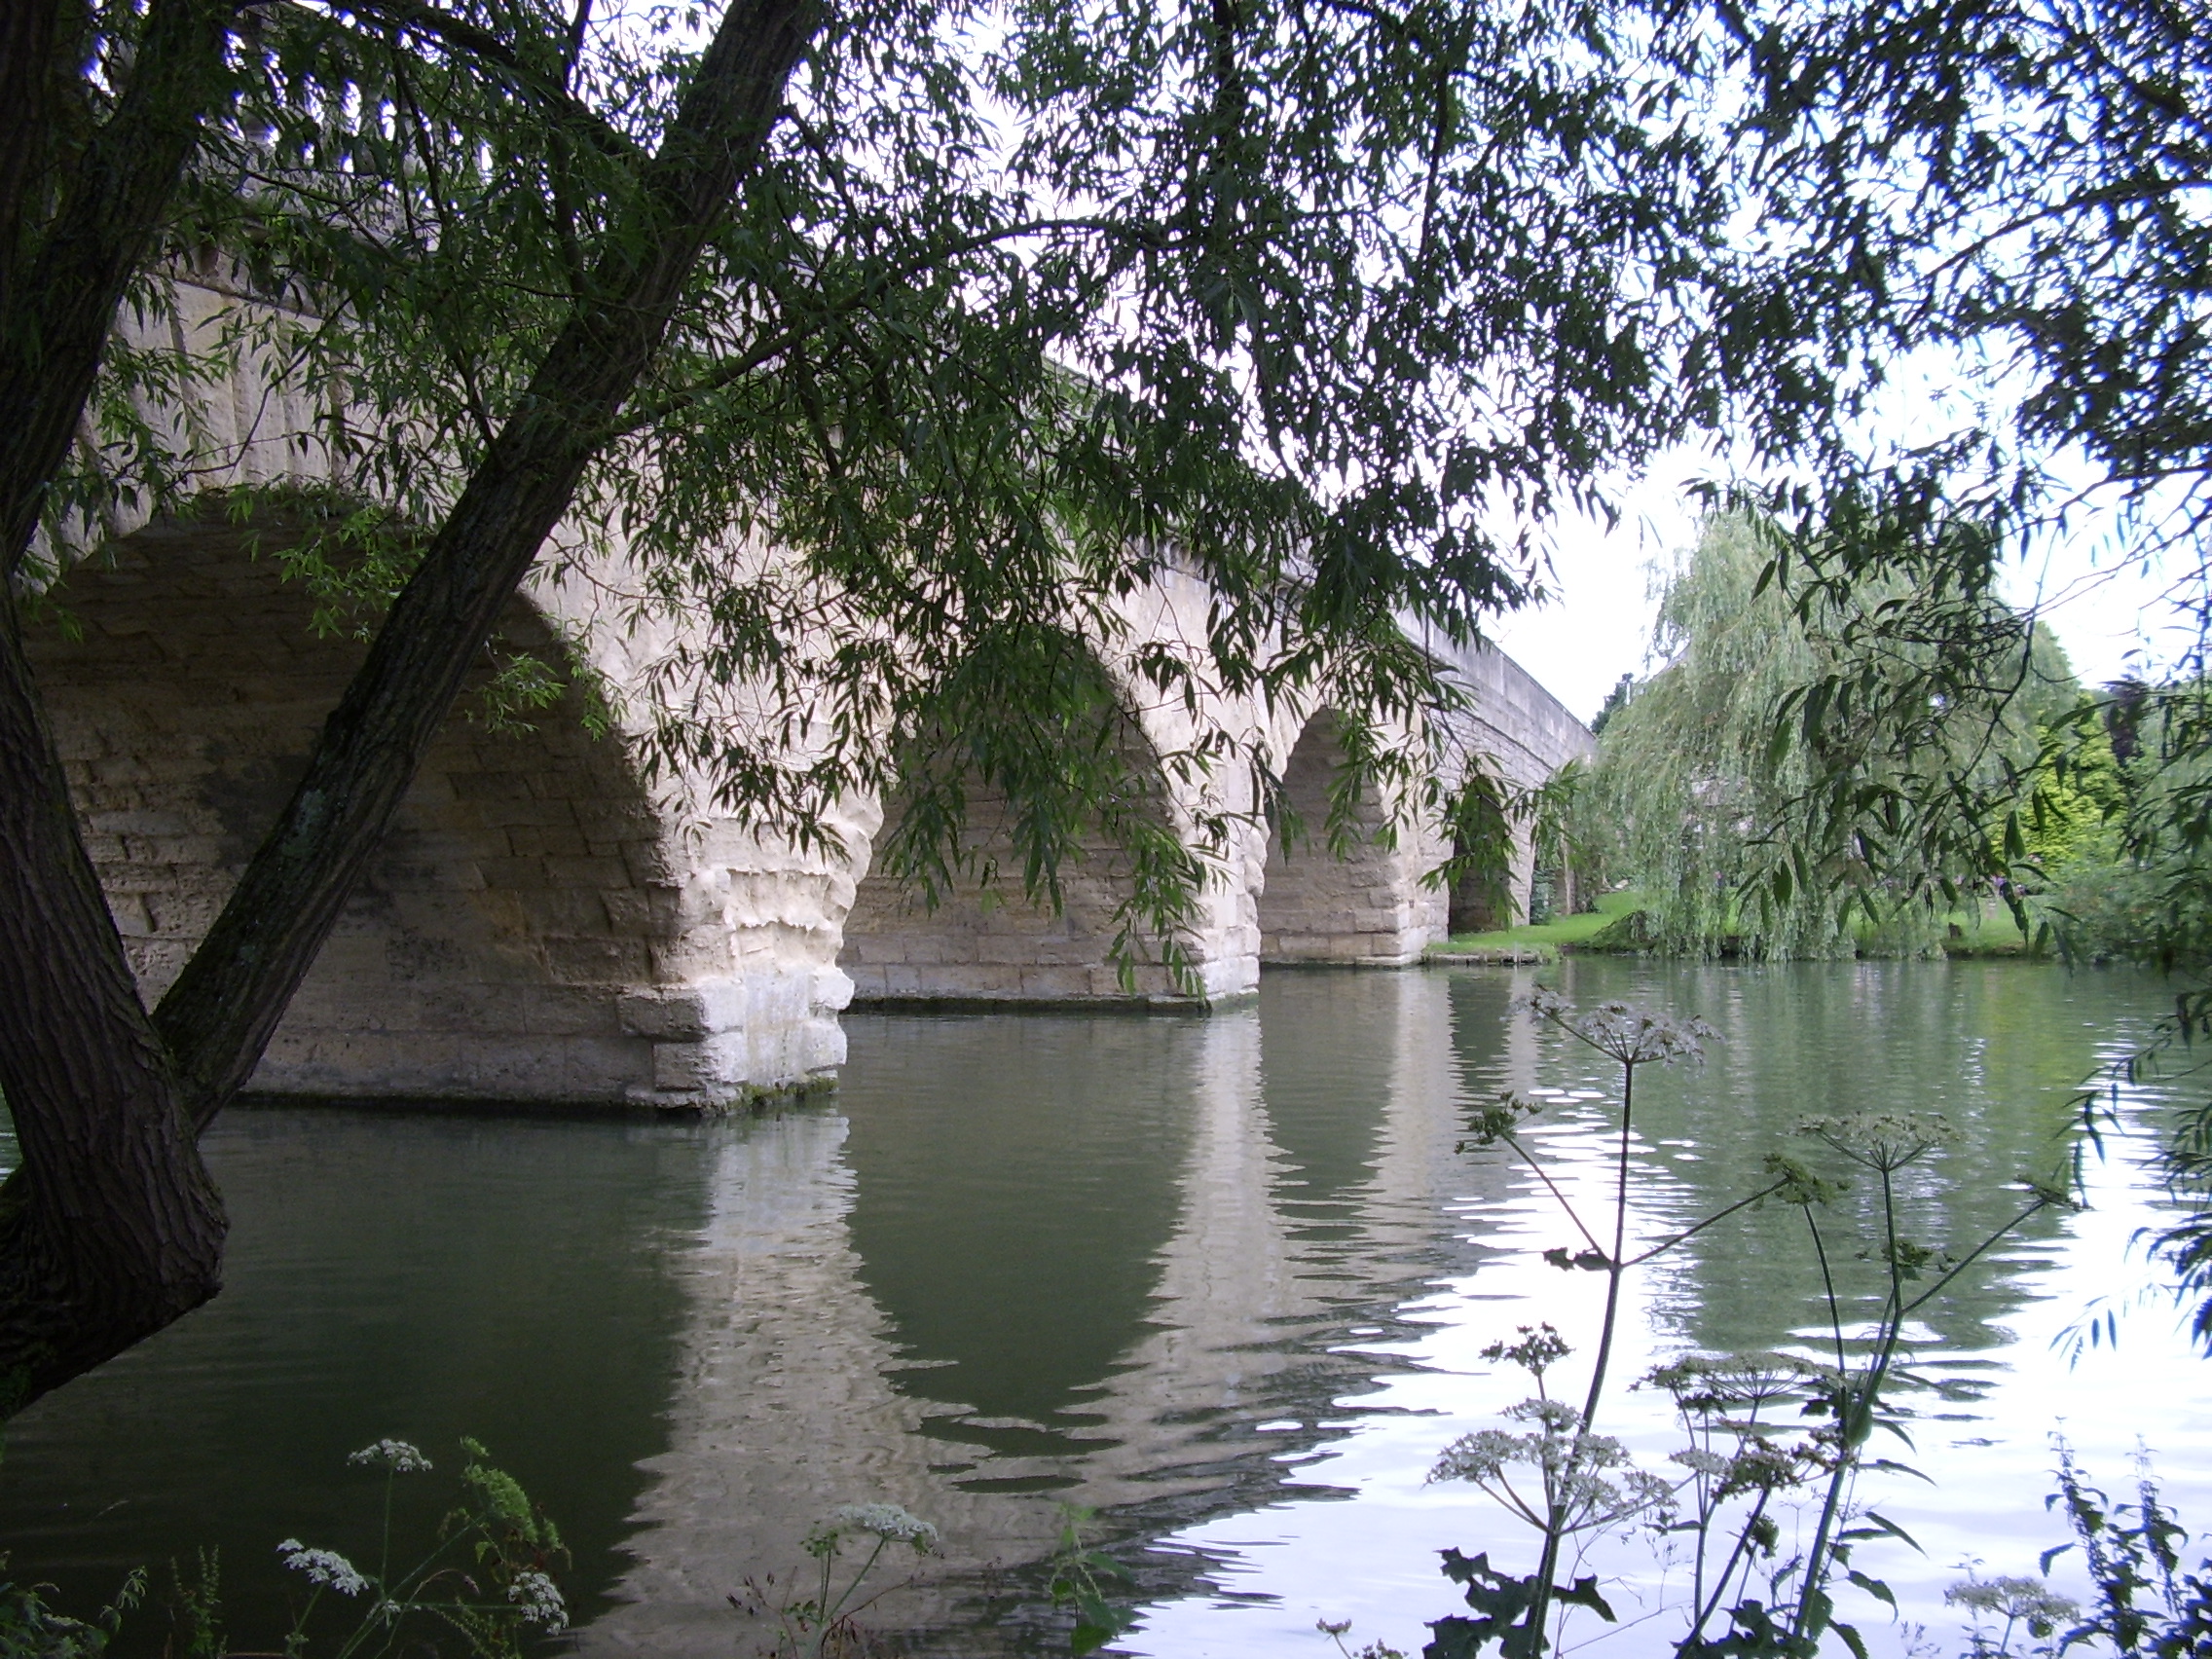 A bridge in Oxfordshire. (c) Marcel Aubron-Bülles